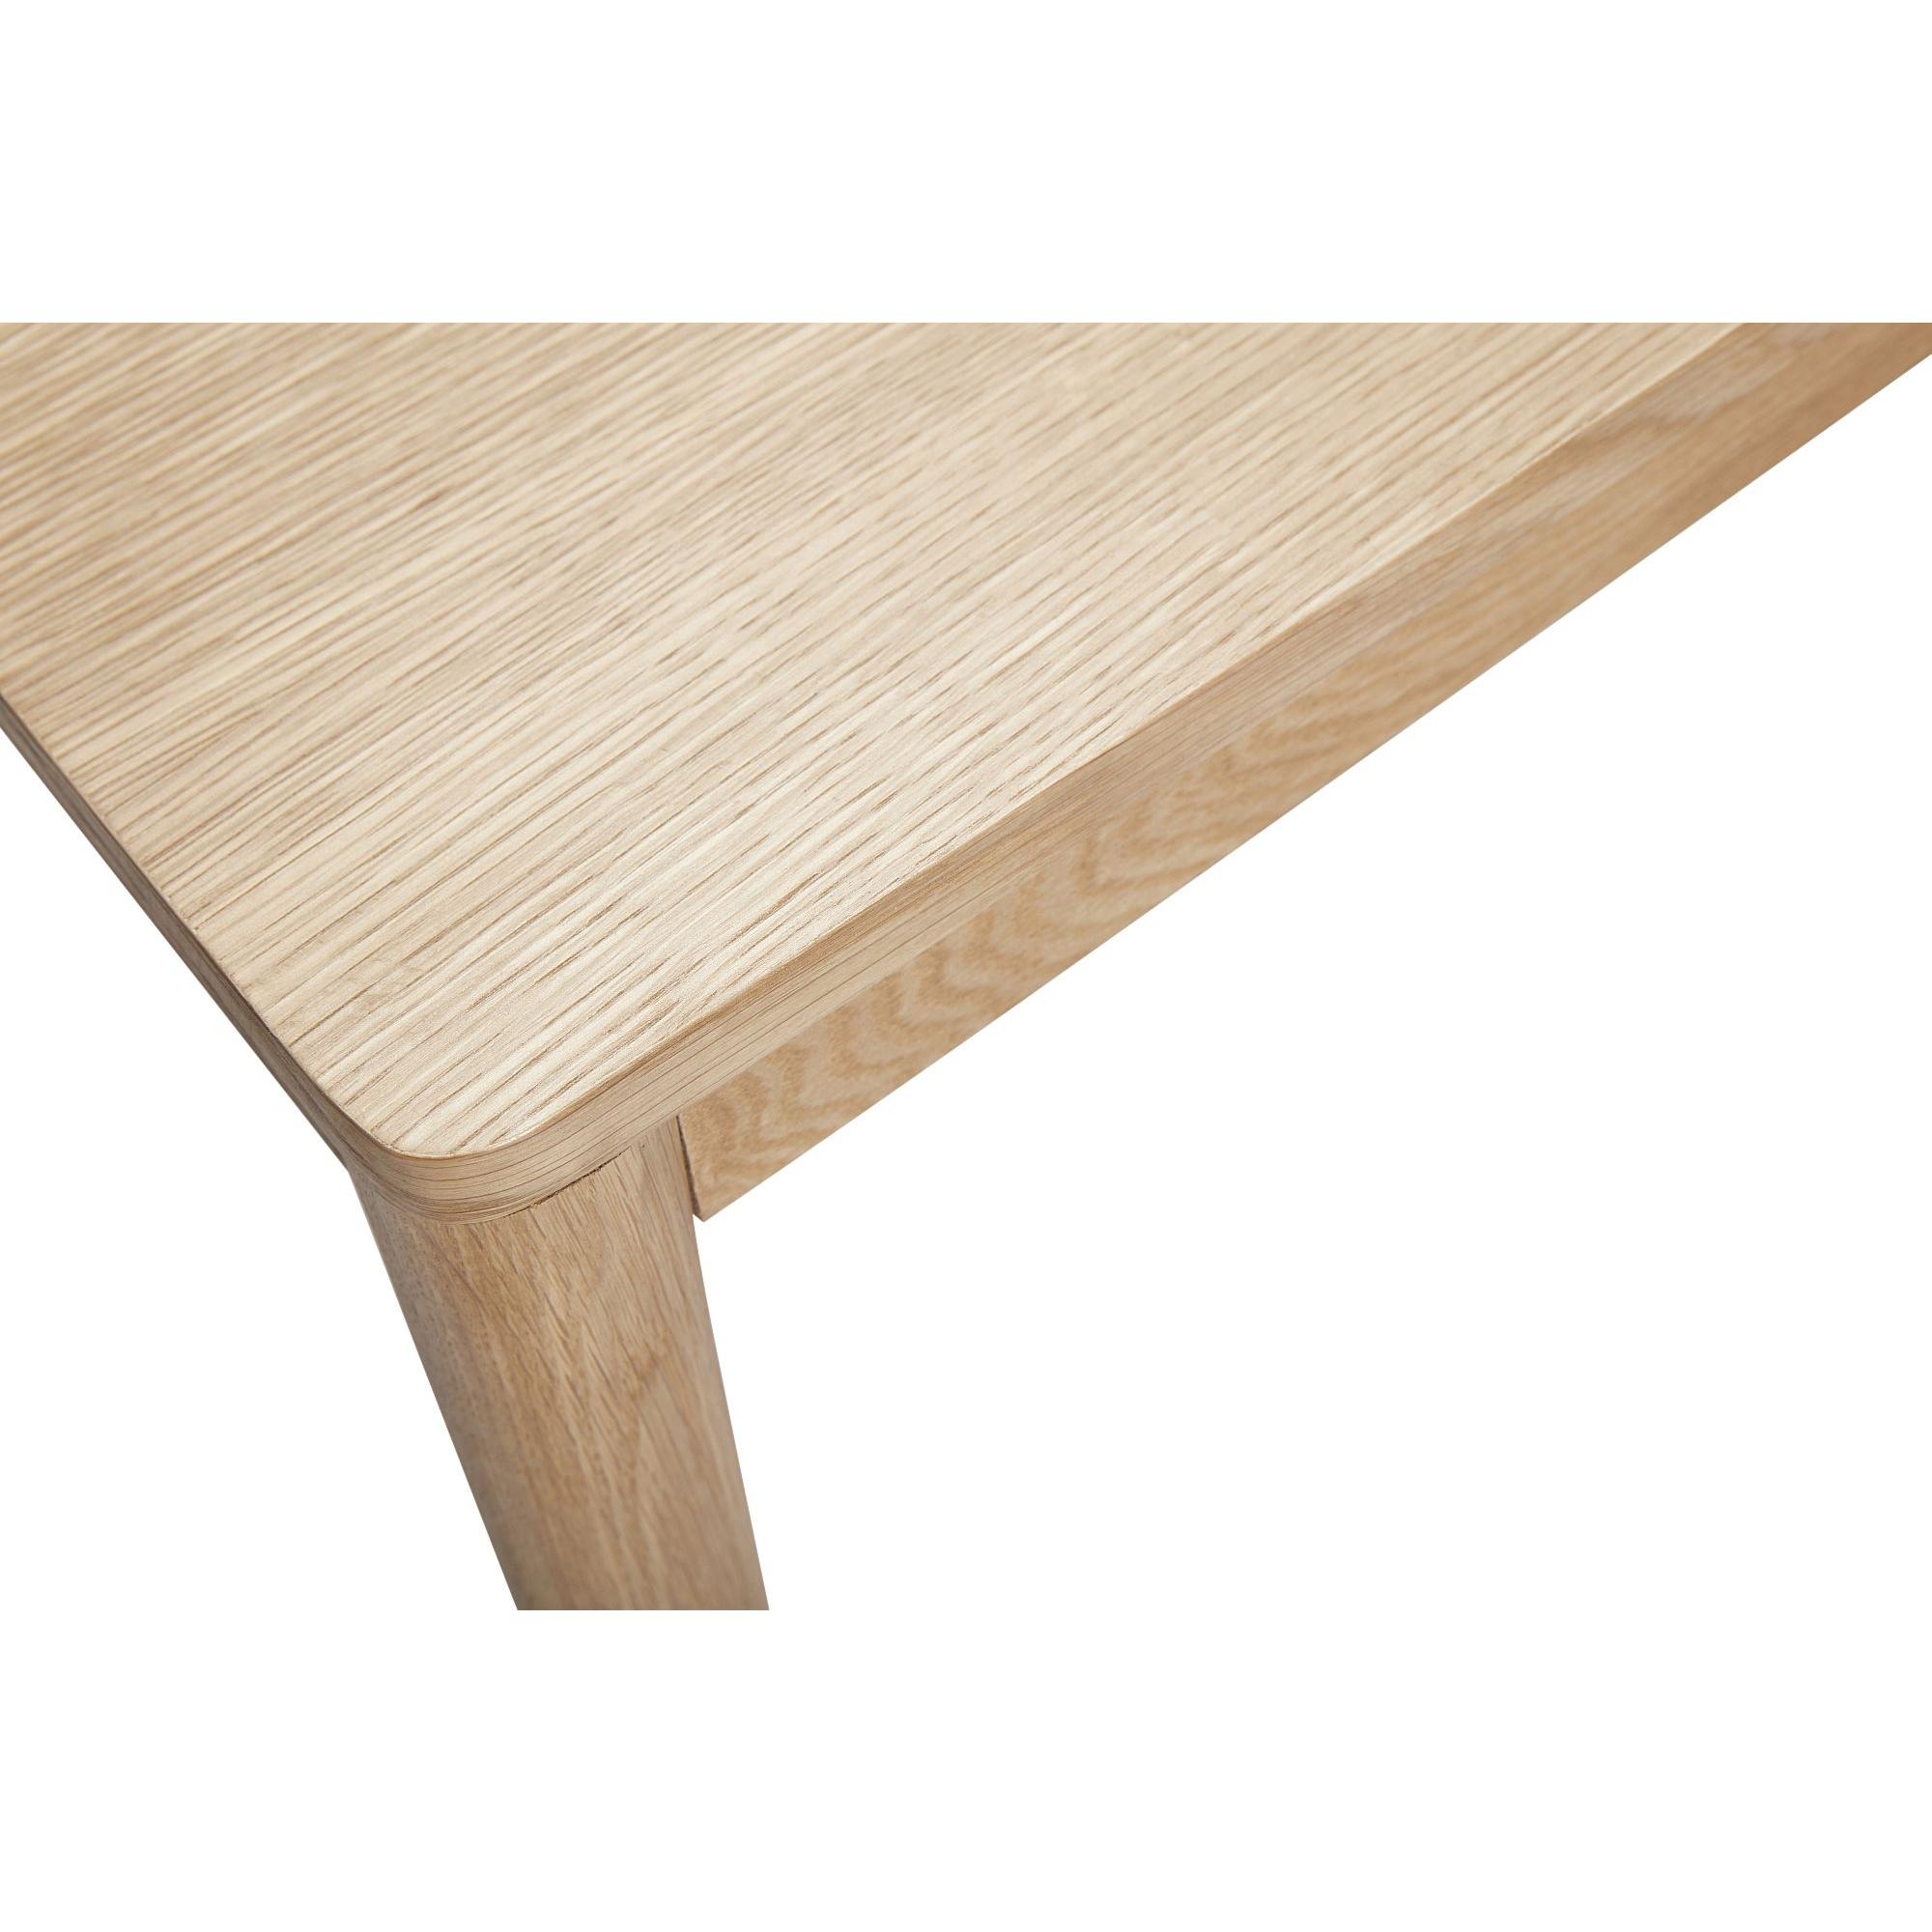  Acorn - Spisebord i egetræ 140 cm. fra Hübsch Interiør i Egetræ, Egefinér (Varenr: 880705F)